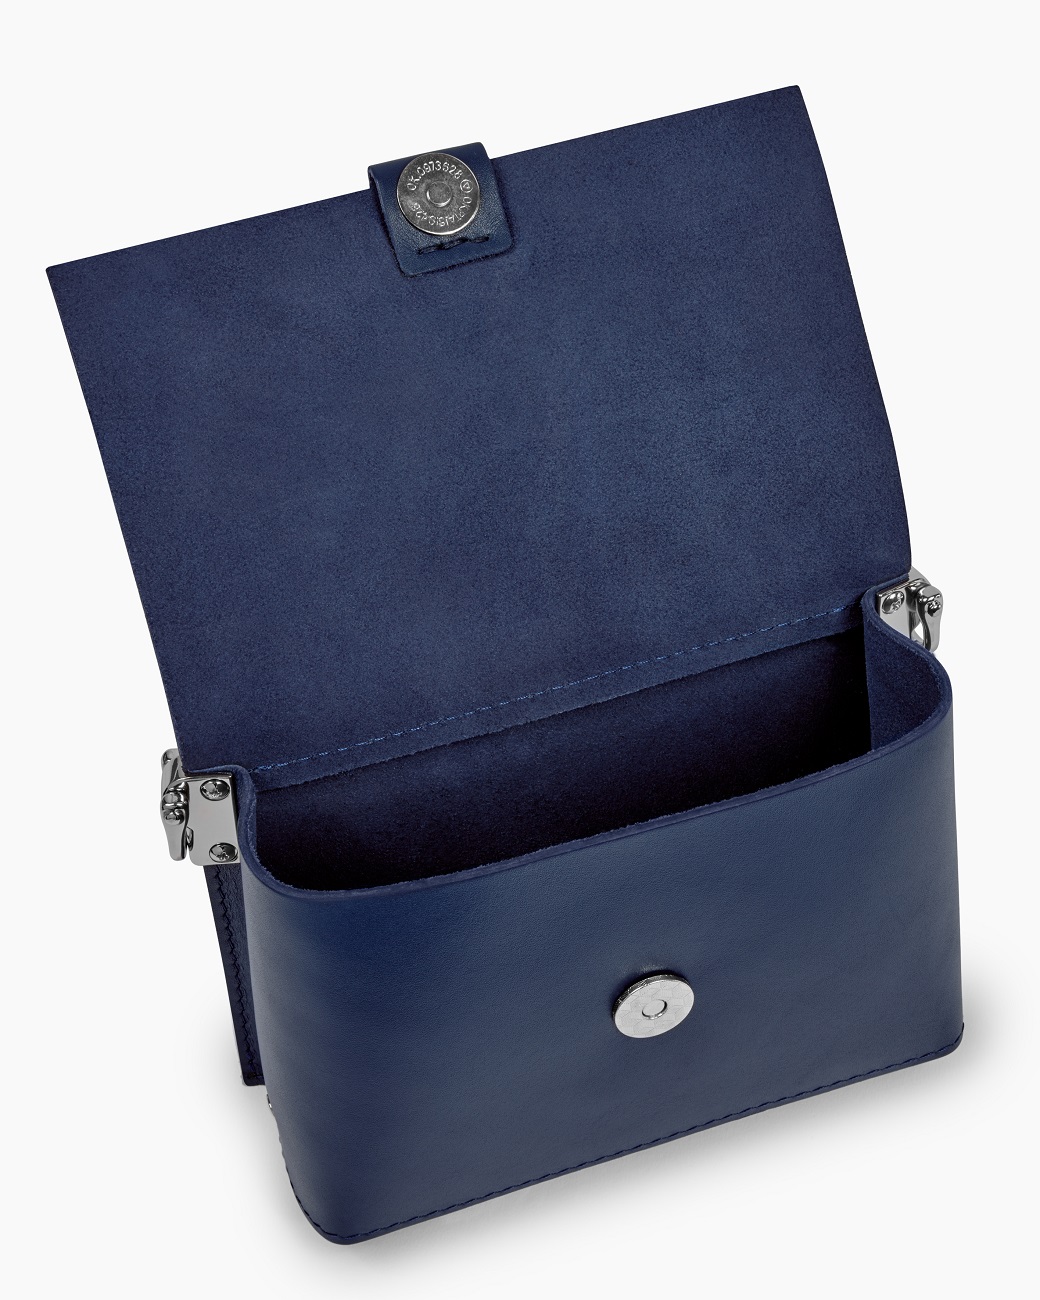 Женская кожаная поясная сумка синяя A004 sapphire